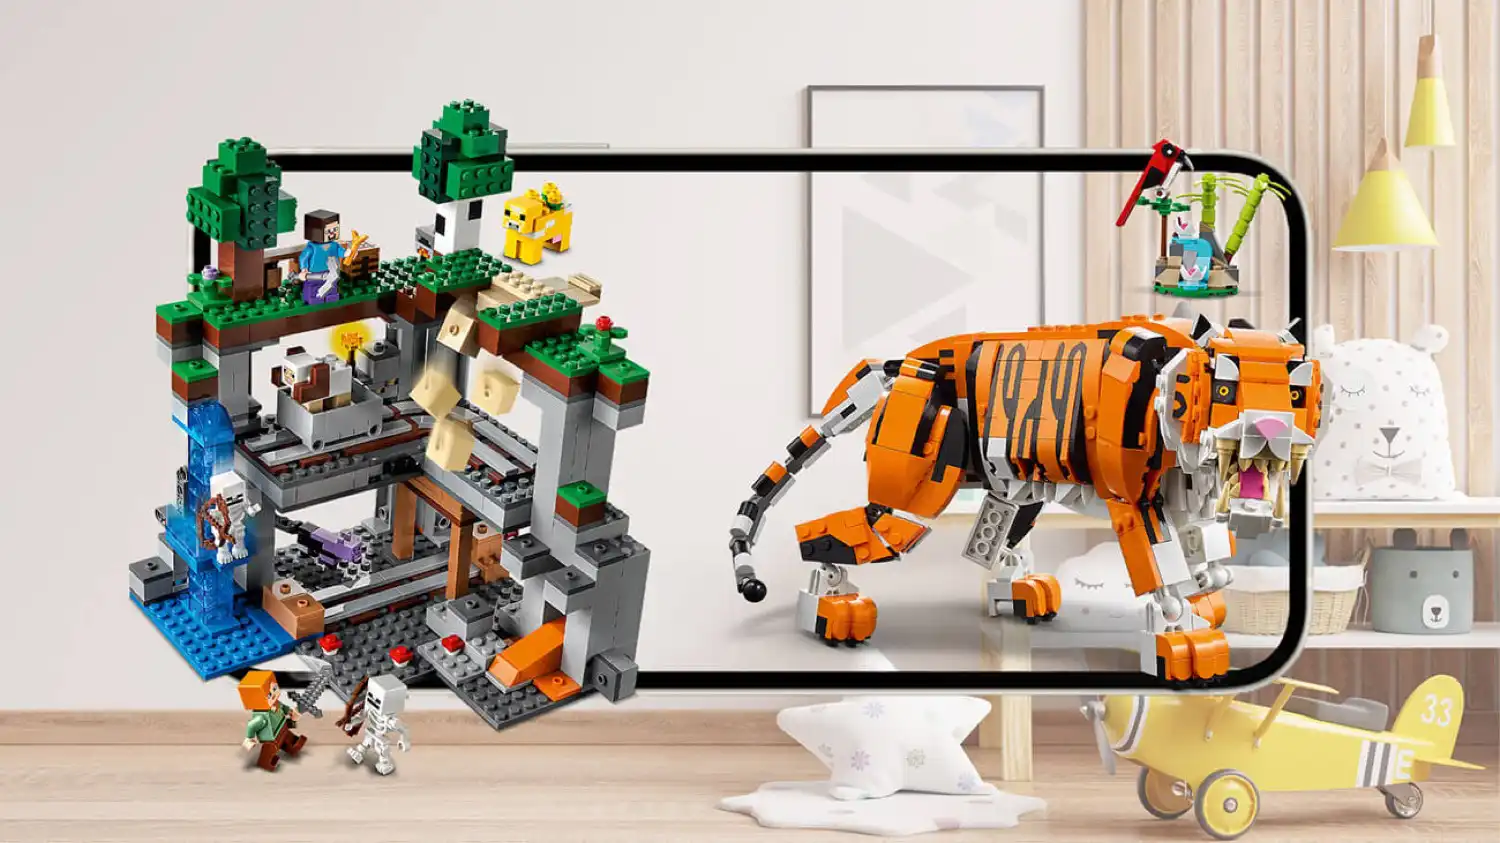 LEGO incorporó realidad aumentada en tiendas oficiales de LatAm